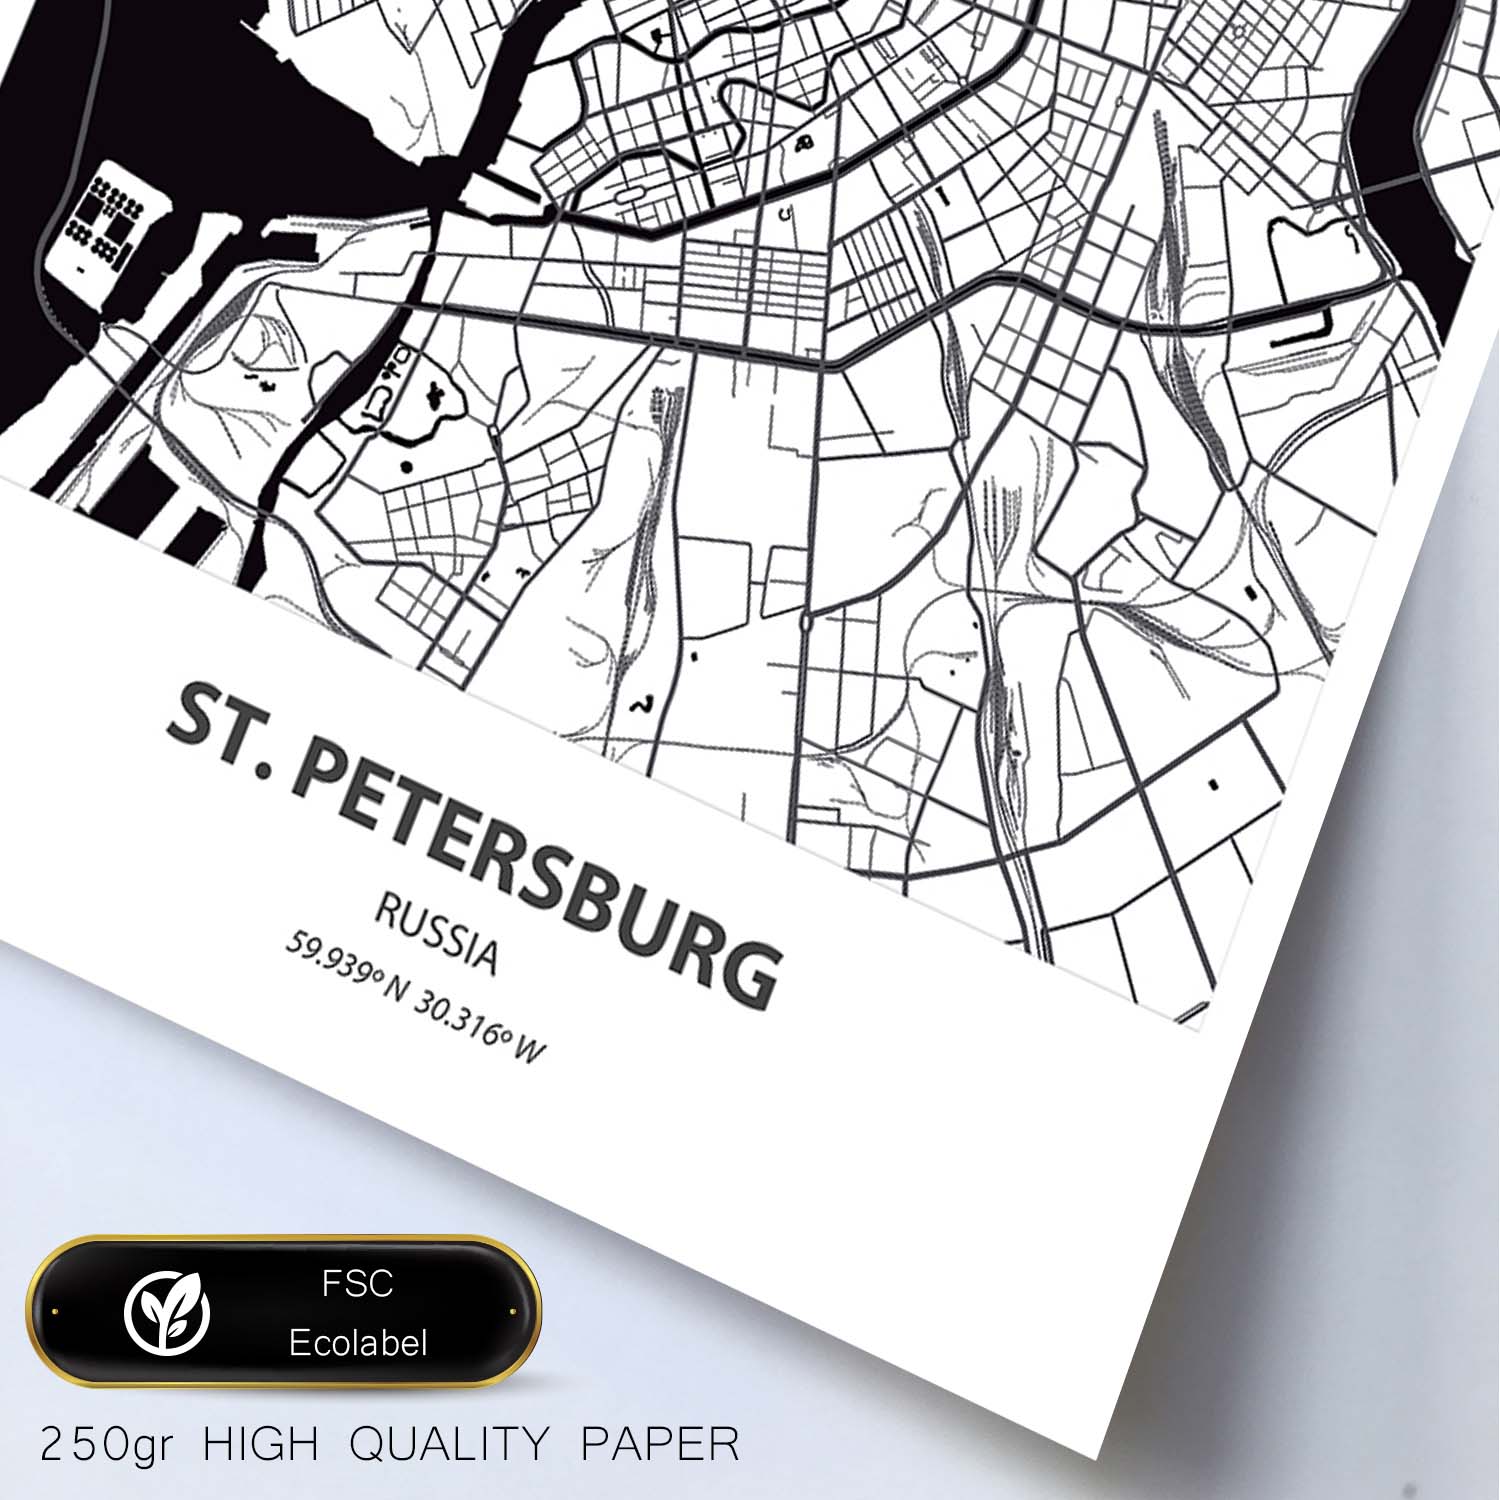 Poster con mapa de St. Petersburg - Rusia. Láminas de ciudades de Asia con mares y ríos en color negro.-Artwork-Nacnic-Nacnic Estudio SL